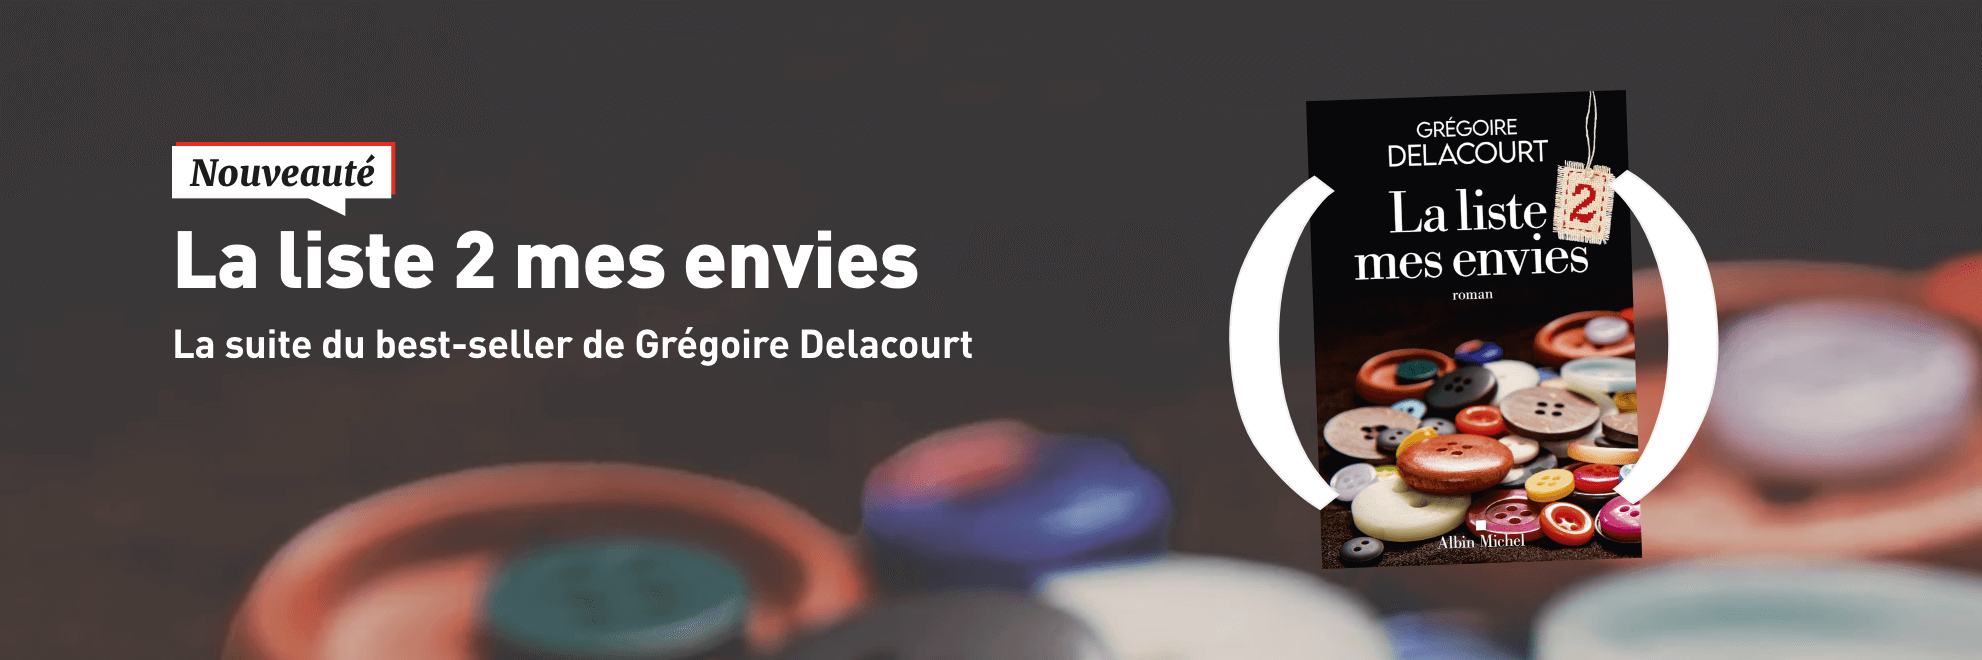 Nouveauté : La liste 2 mes envies de Grégoire Delacourt